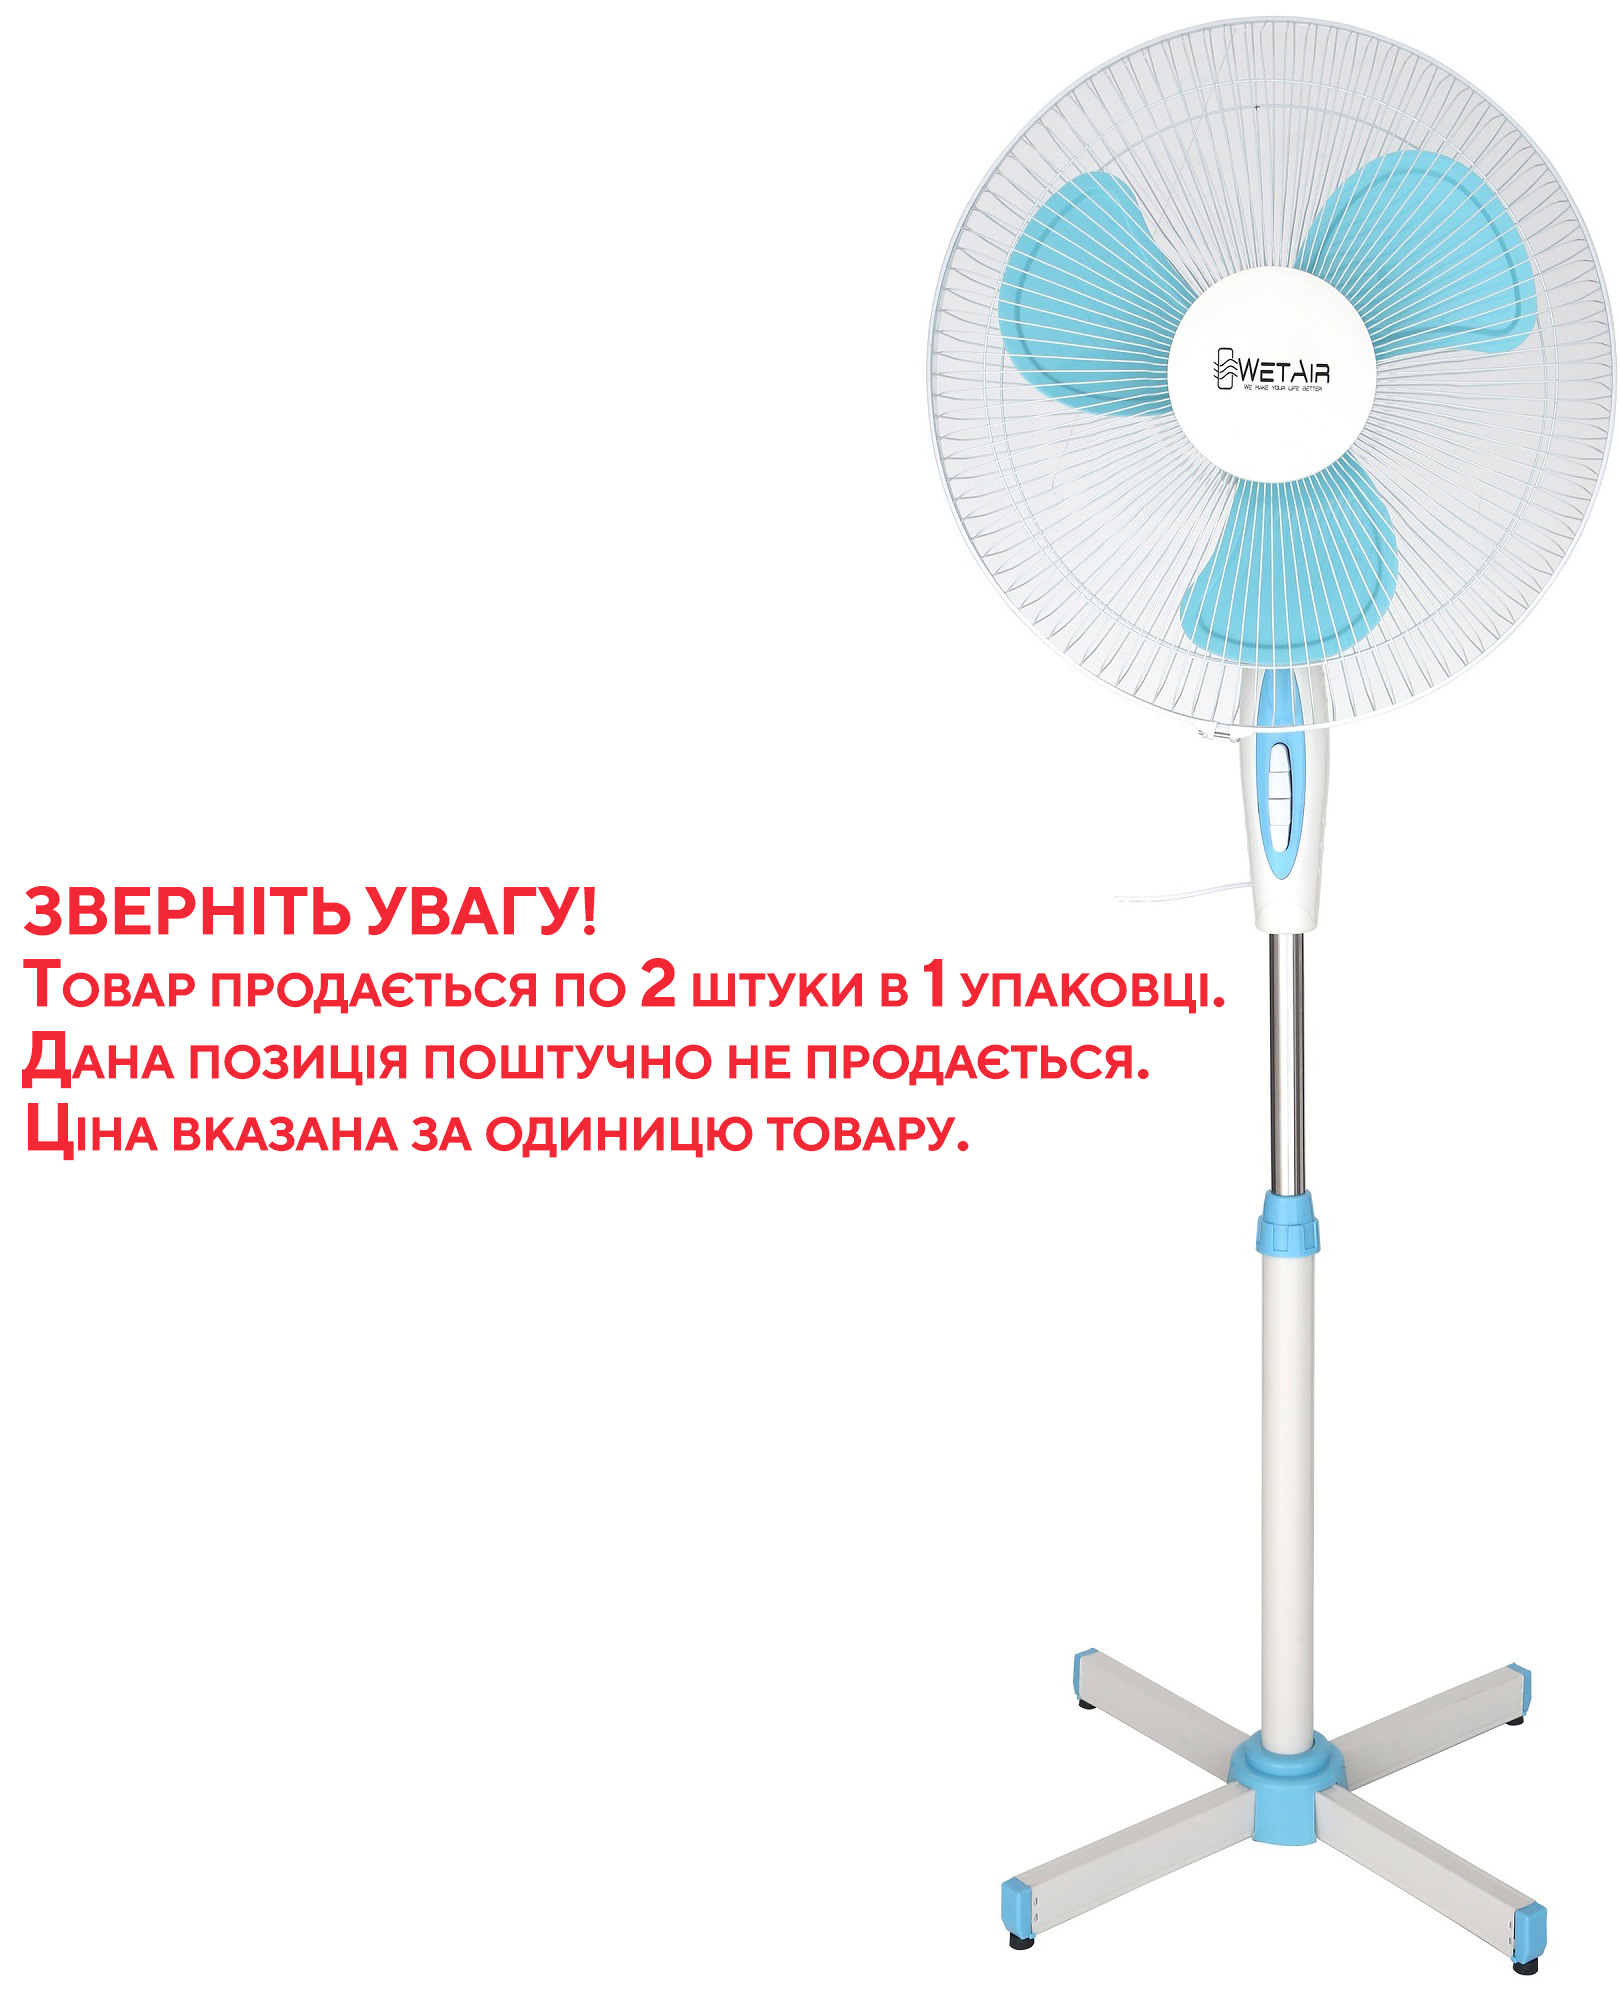 Вентилятор WETAIR SF-2020 (2шт/уп) в Киеве